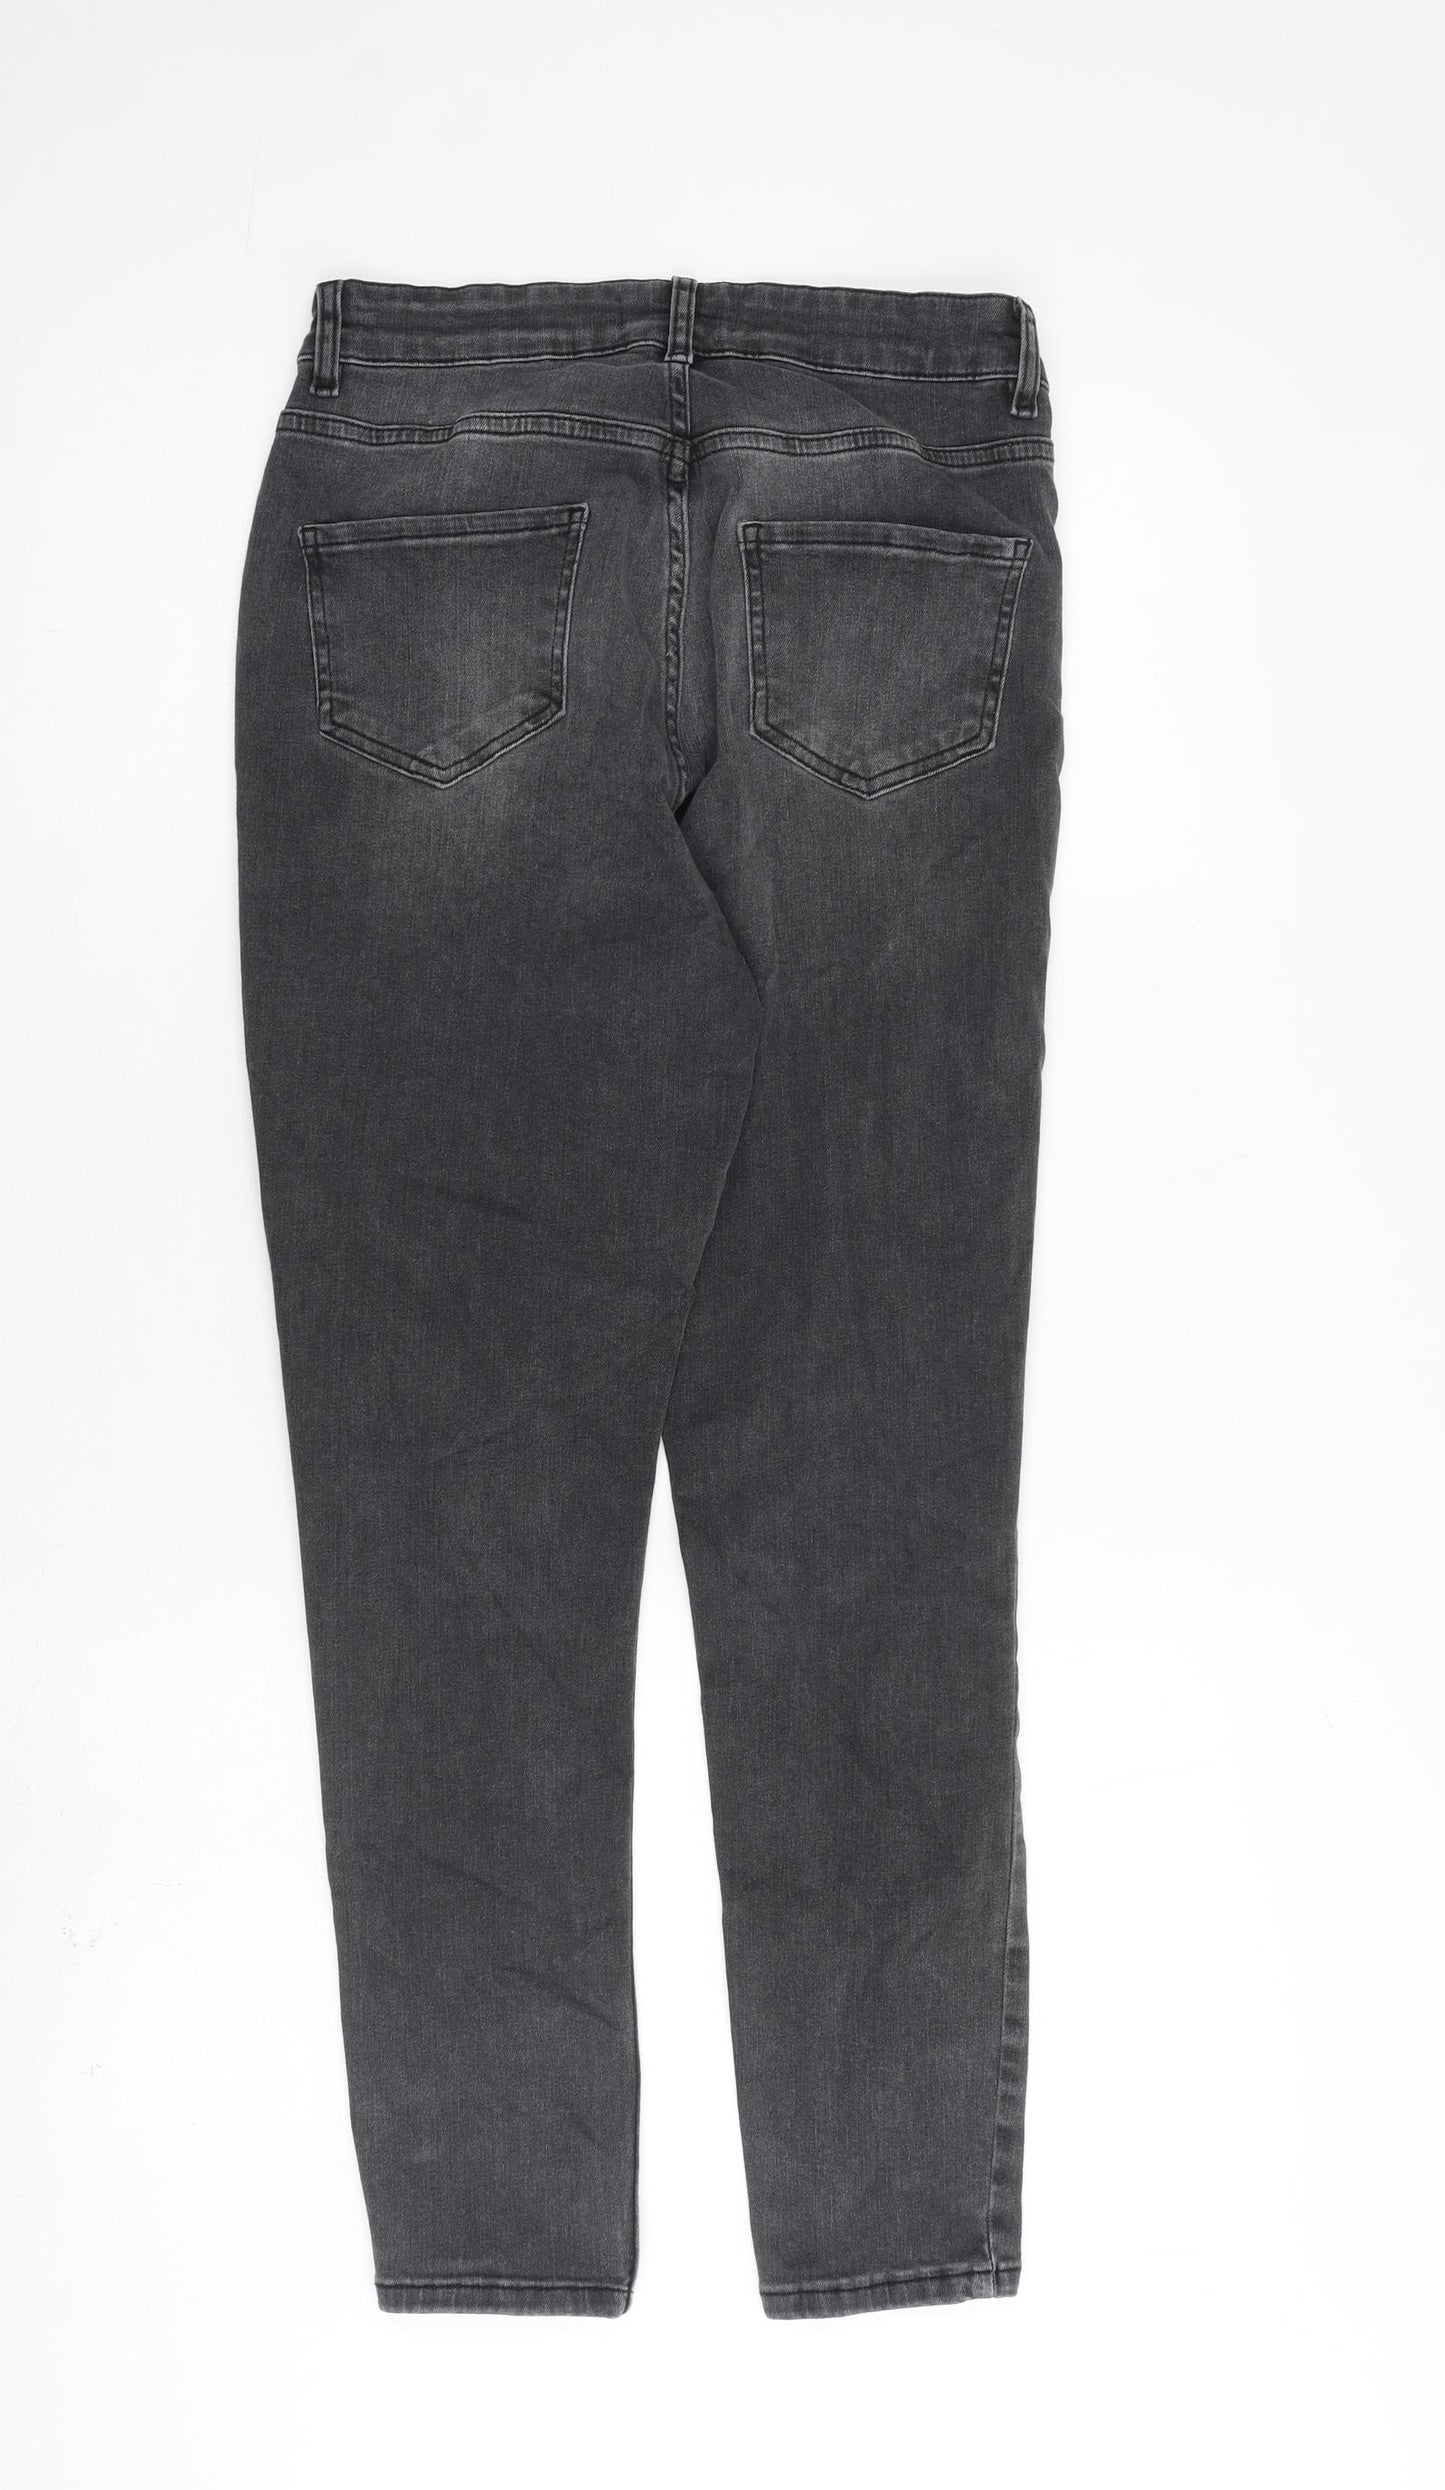 Sosandar Womens Grey Cotton Skinny Jeans Size 10 L27 in Regular Zip